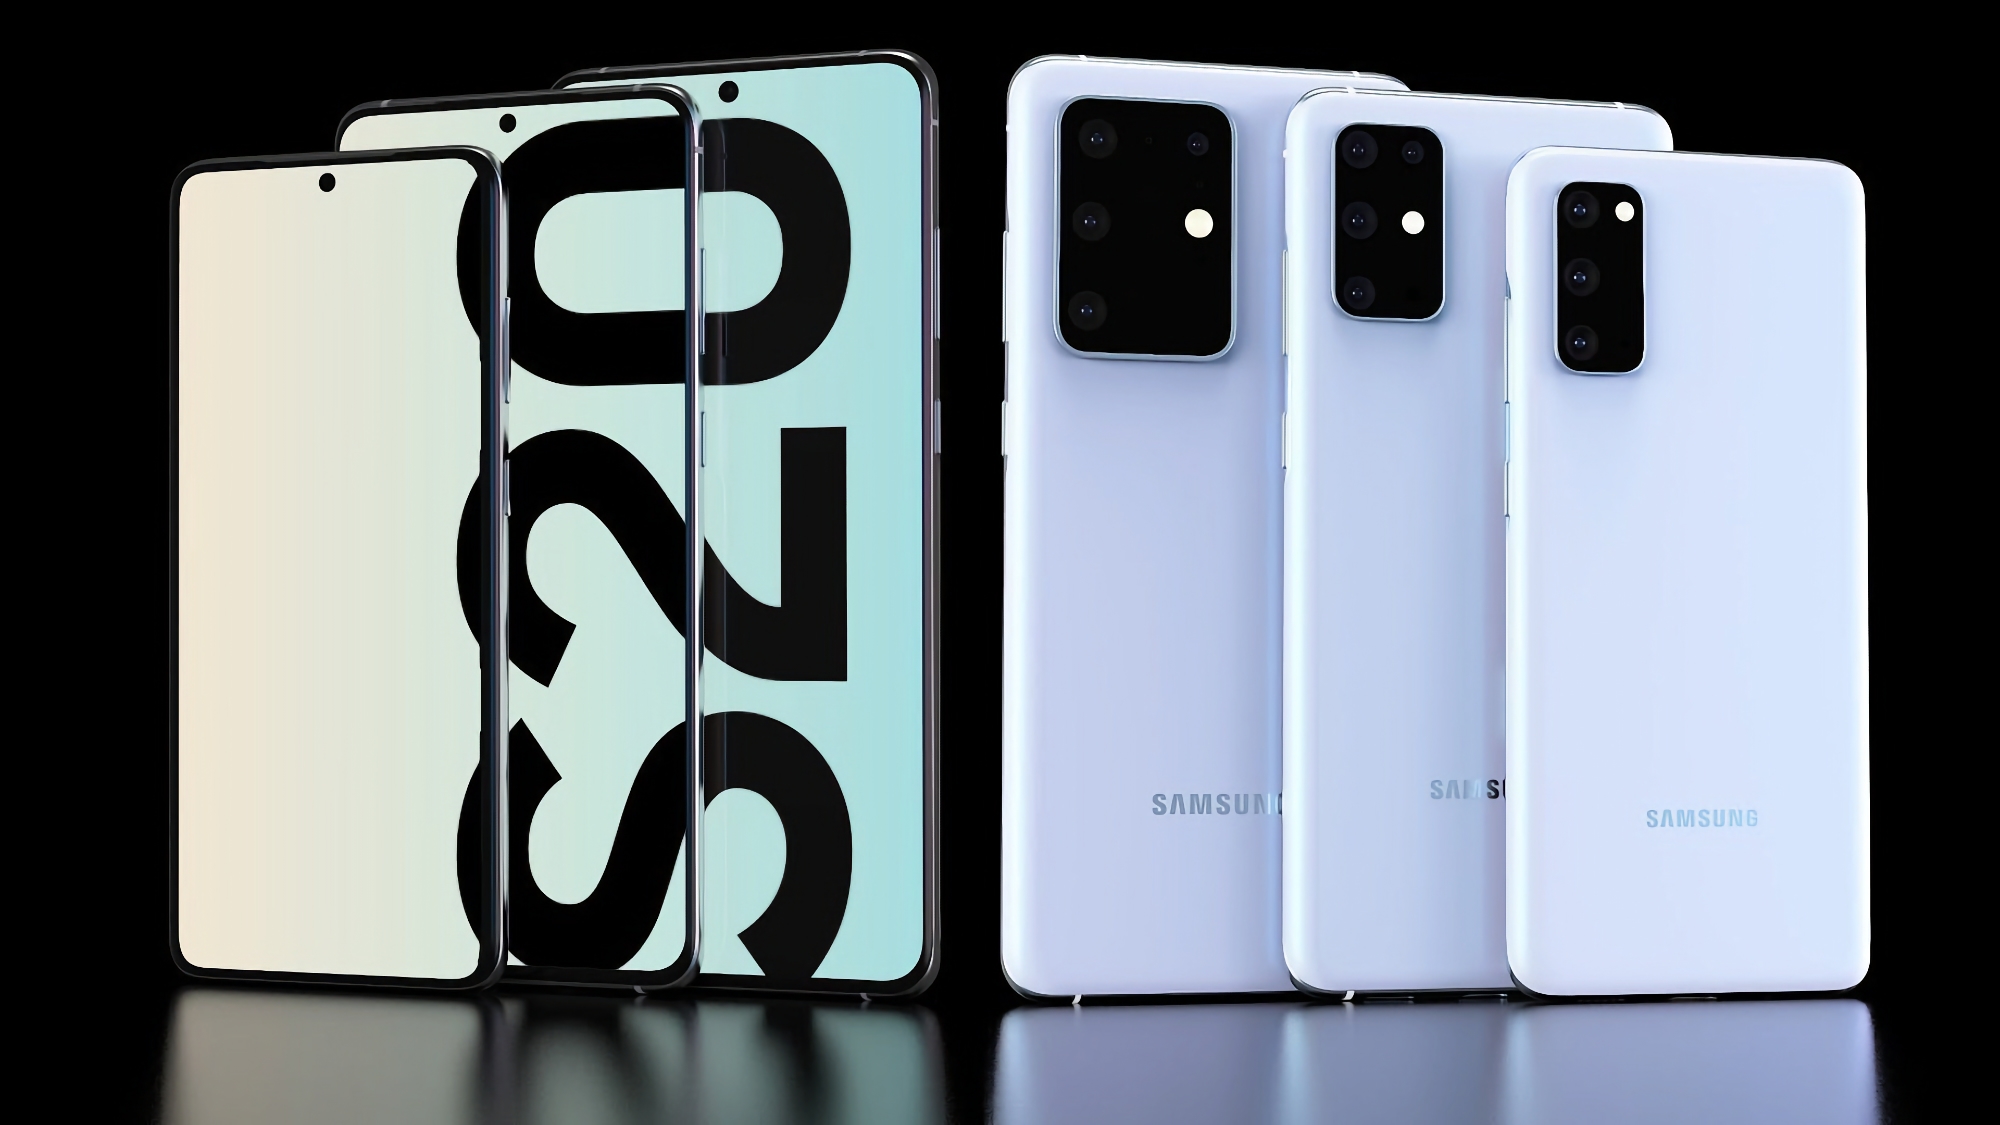 I modelli Galaxy S20, Galaxy S20+ e Galaxy S20 Ultra hanno iniziato a ricevere l'aggiornamento One UI 5.1 negli Stati Uniti.